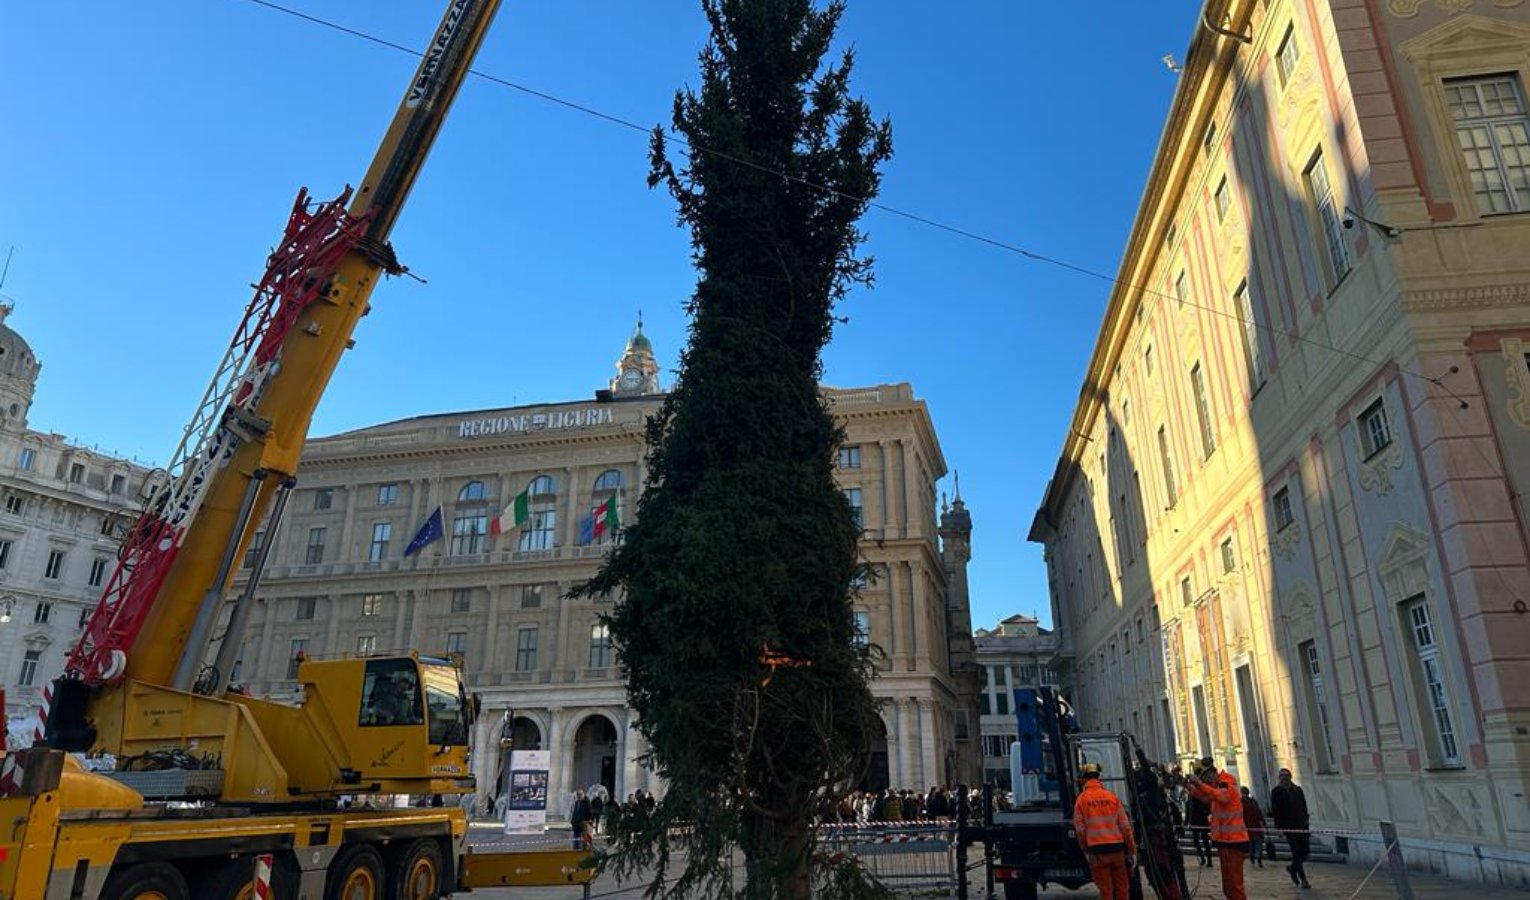 Un abete in regalo dalla Lombardia: a De Ferrari ecco l'albero di Natale di Genova